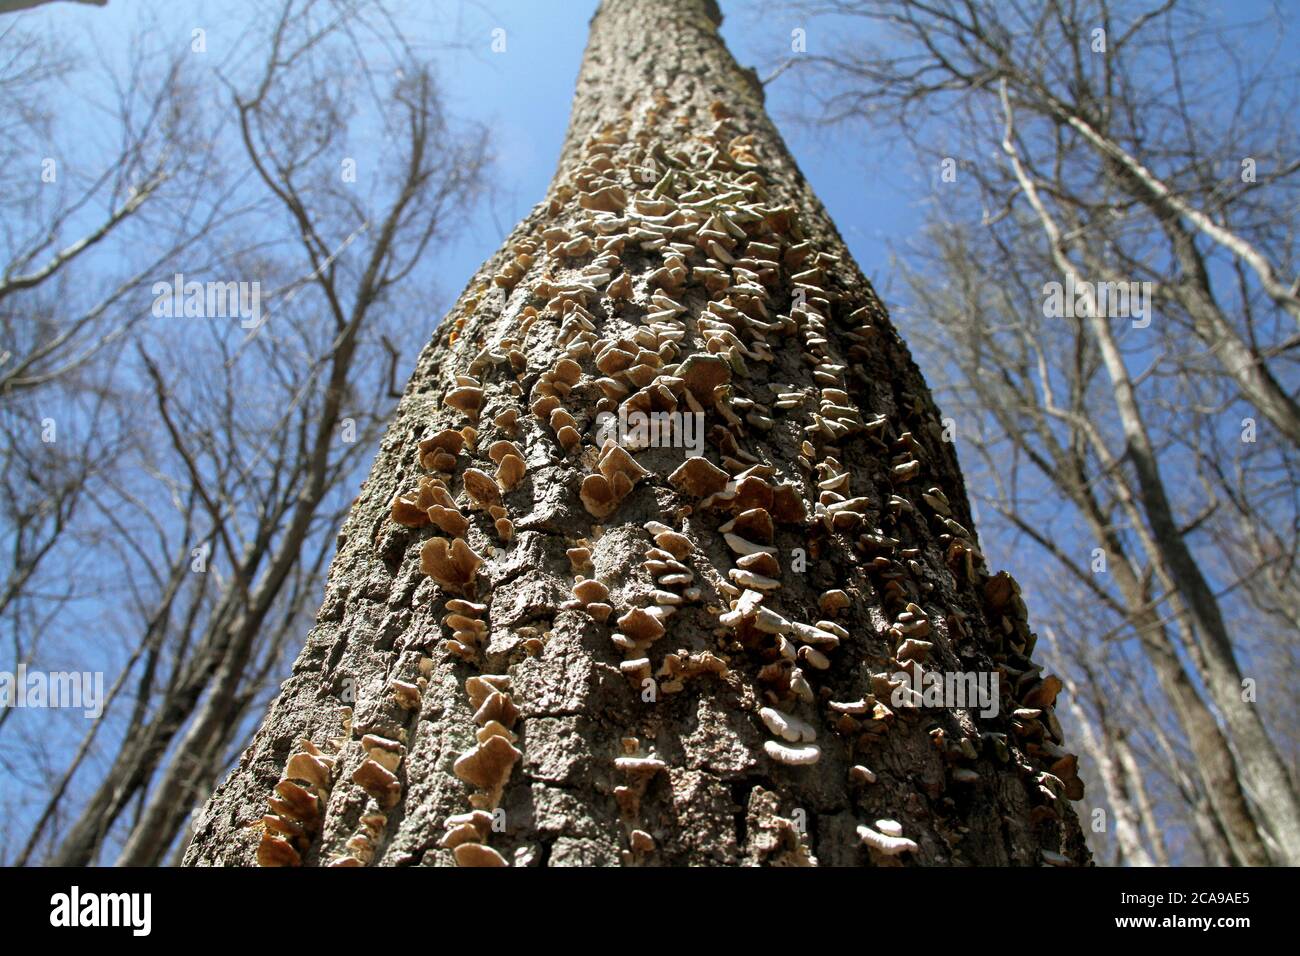 Fungi on a tree Stock Photo